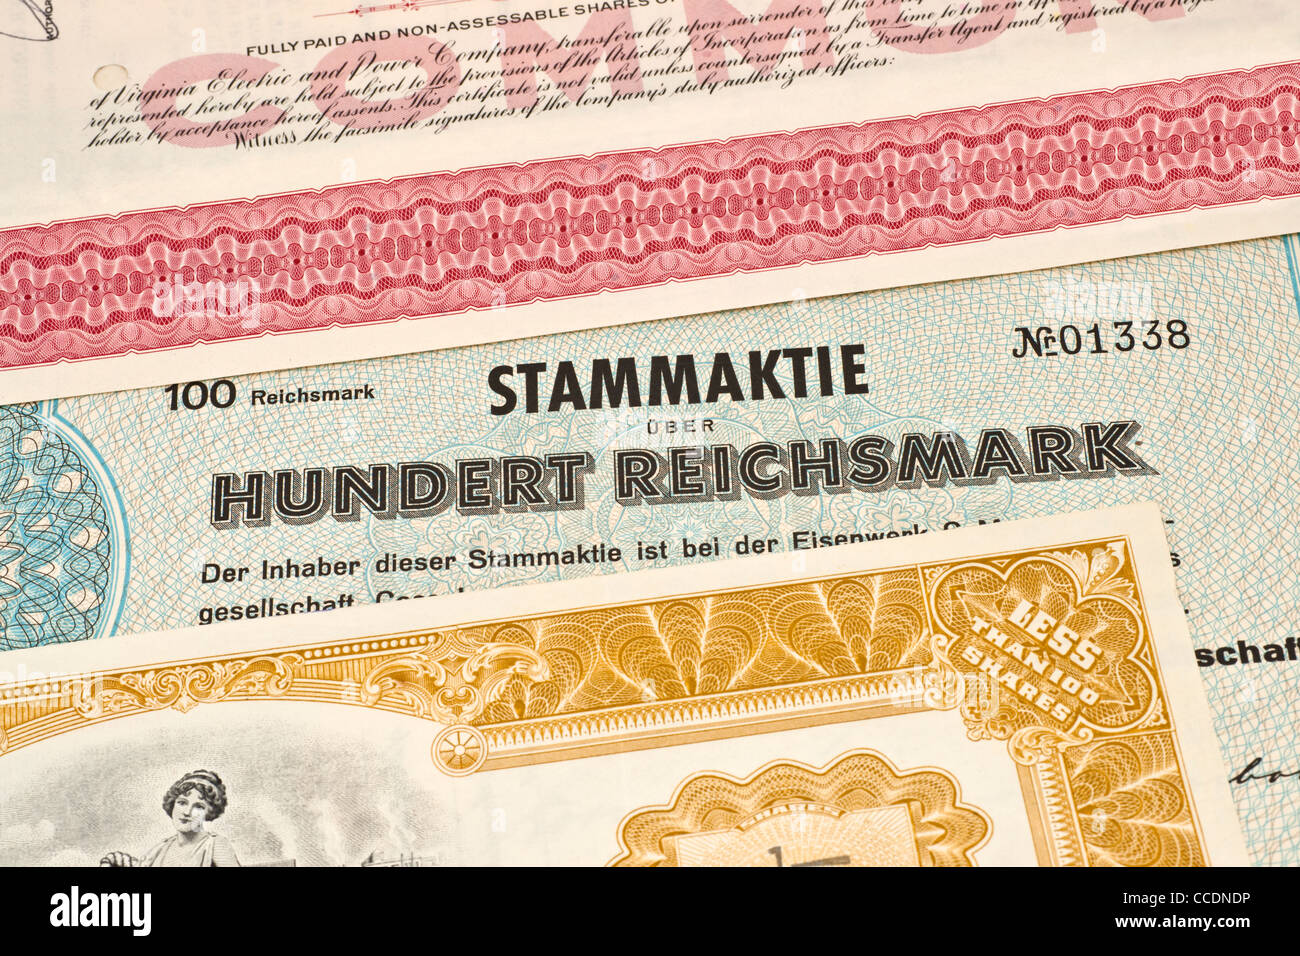 Detailansicht verschiedener alter Aktien | detail photo of some old shares Stock Photo